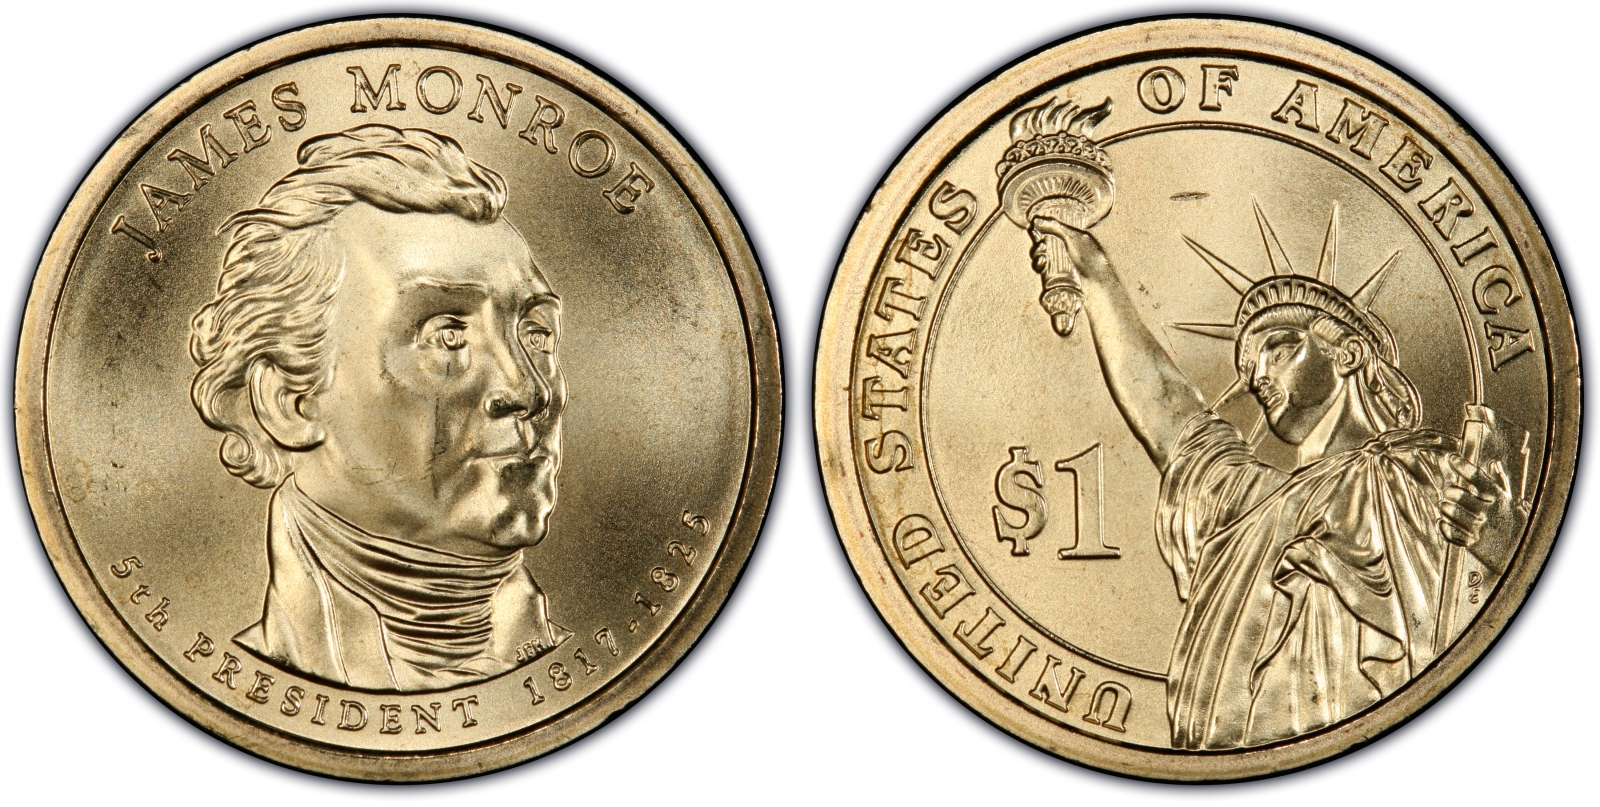 james monroe presidential coin